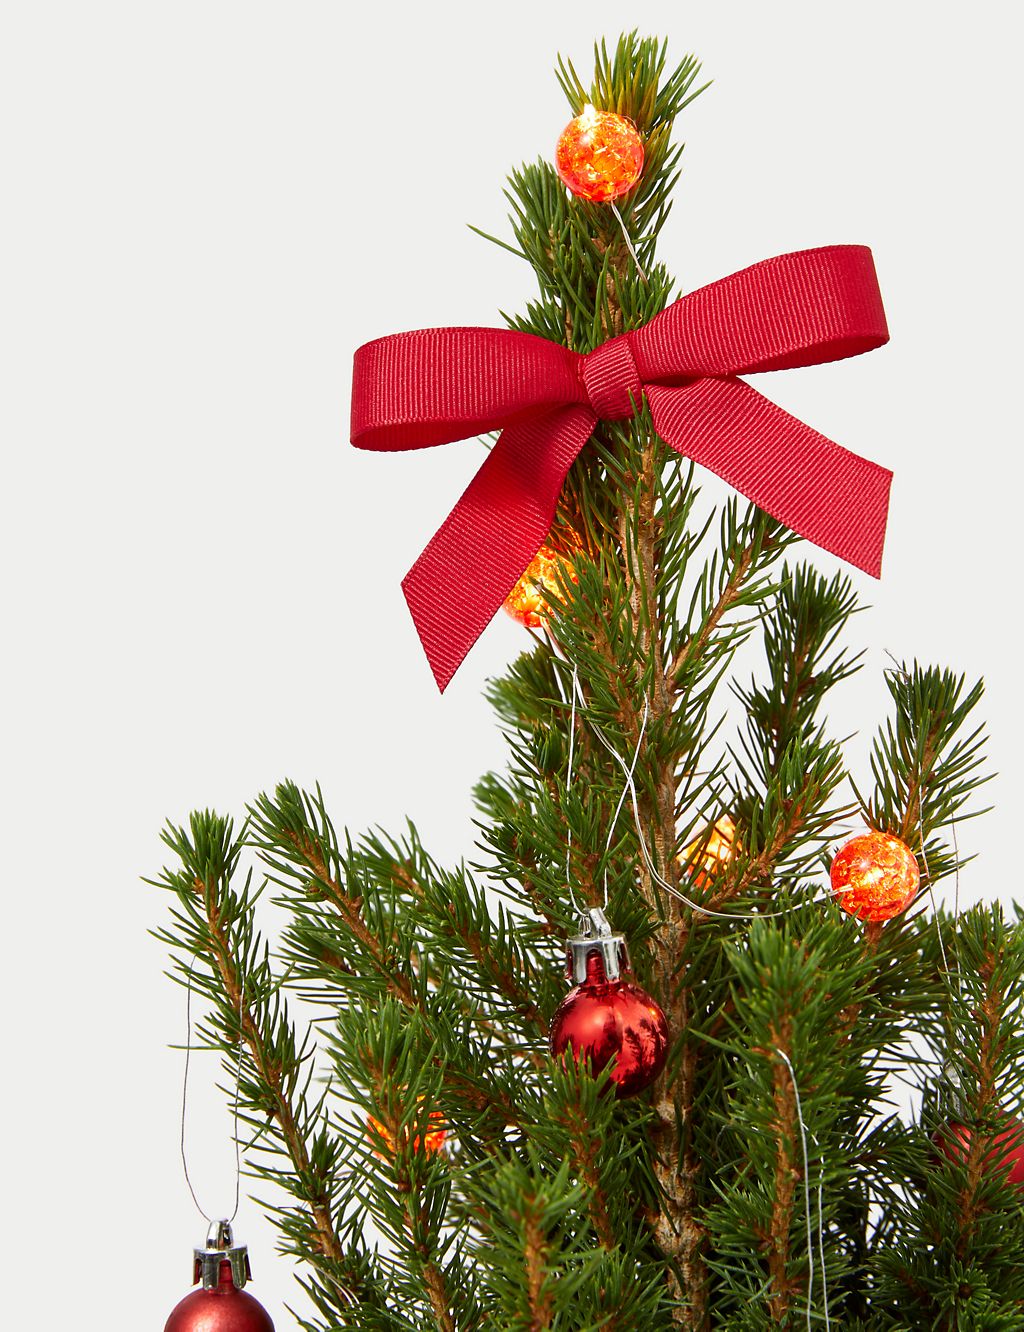 Letterbox Real Christmas Tree in Reindeer Basket 2 of 4